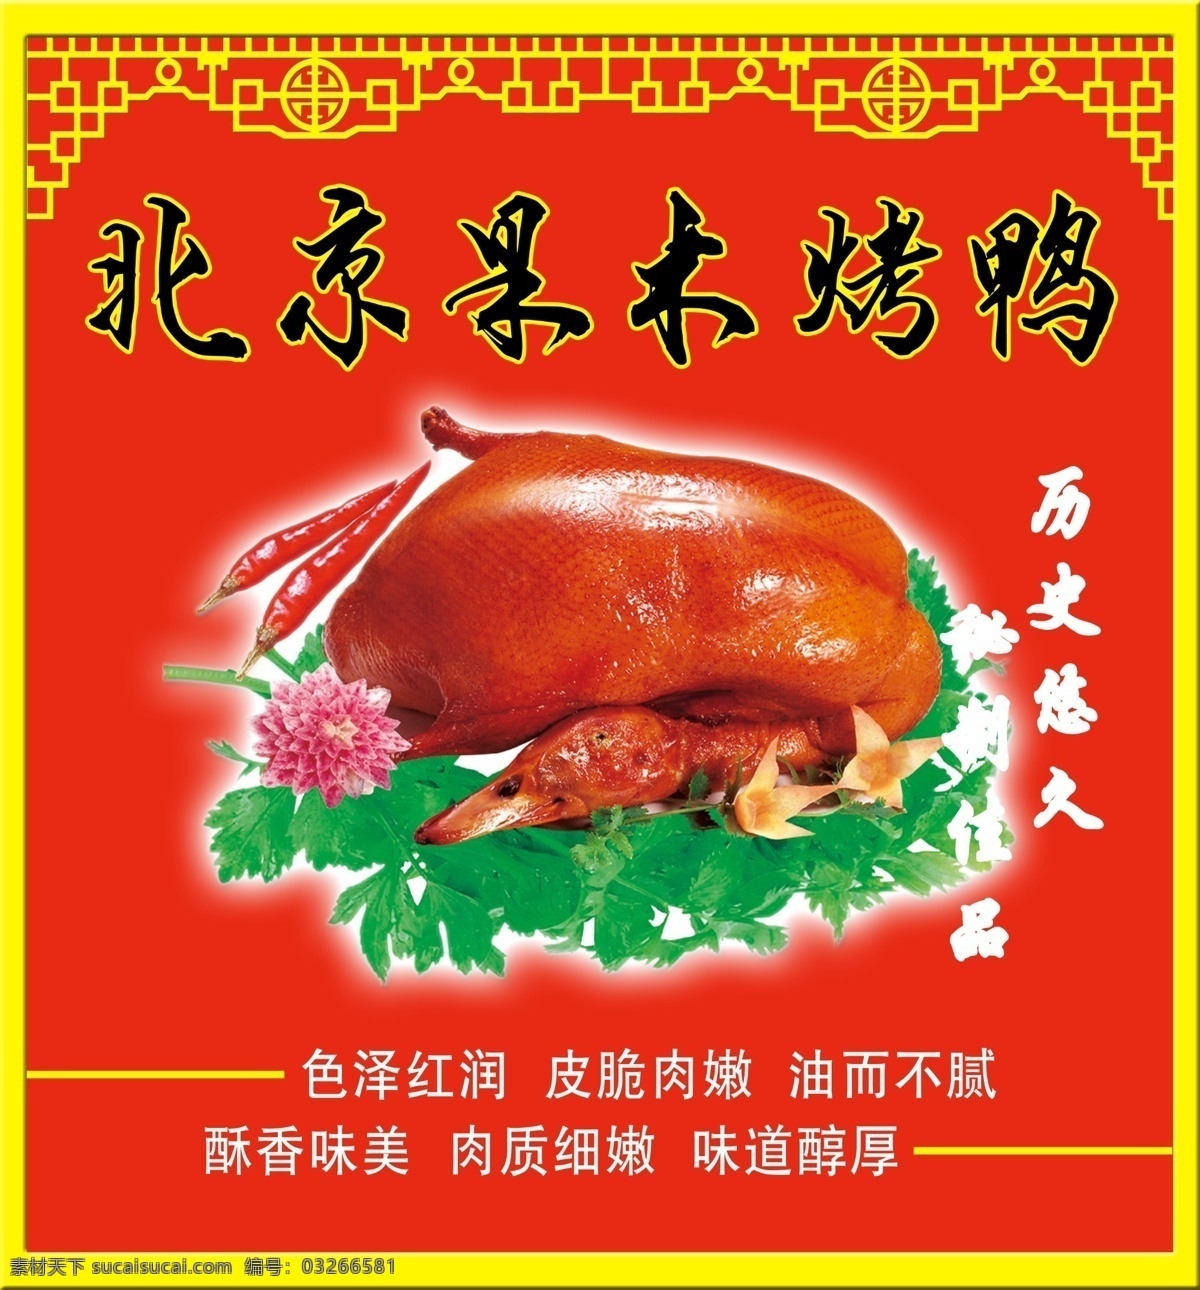 烤鸭 北京 北京果木烤鸭 历史悠久 分层